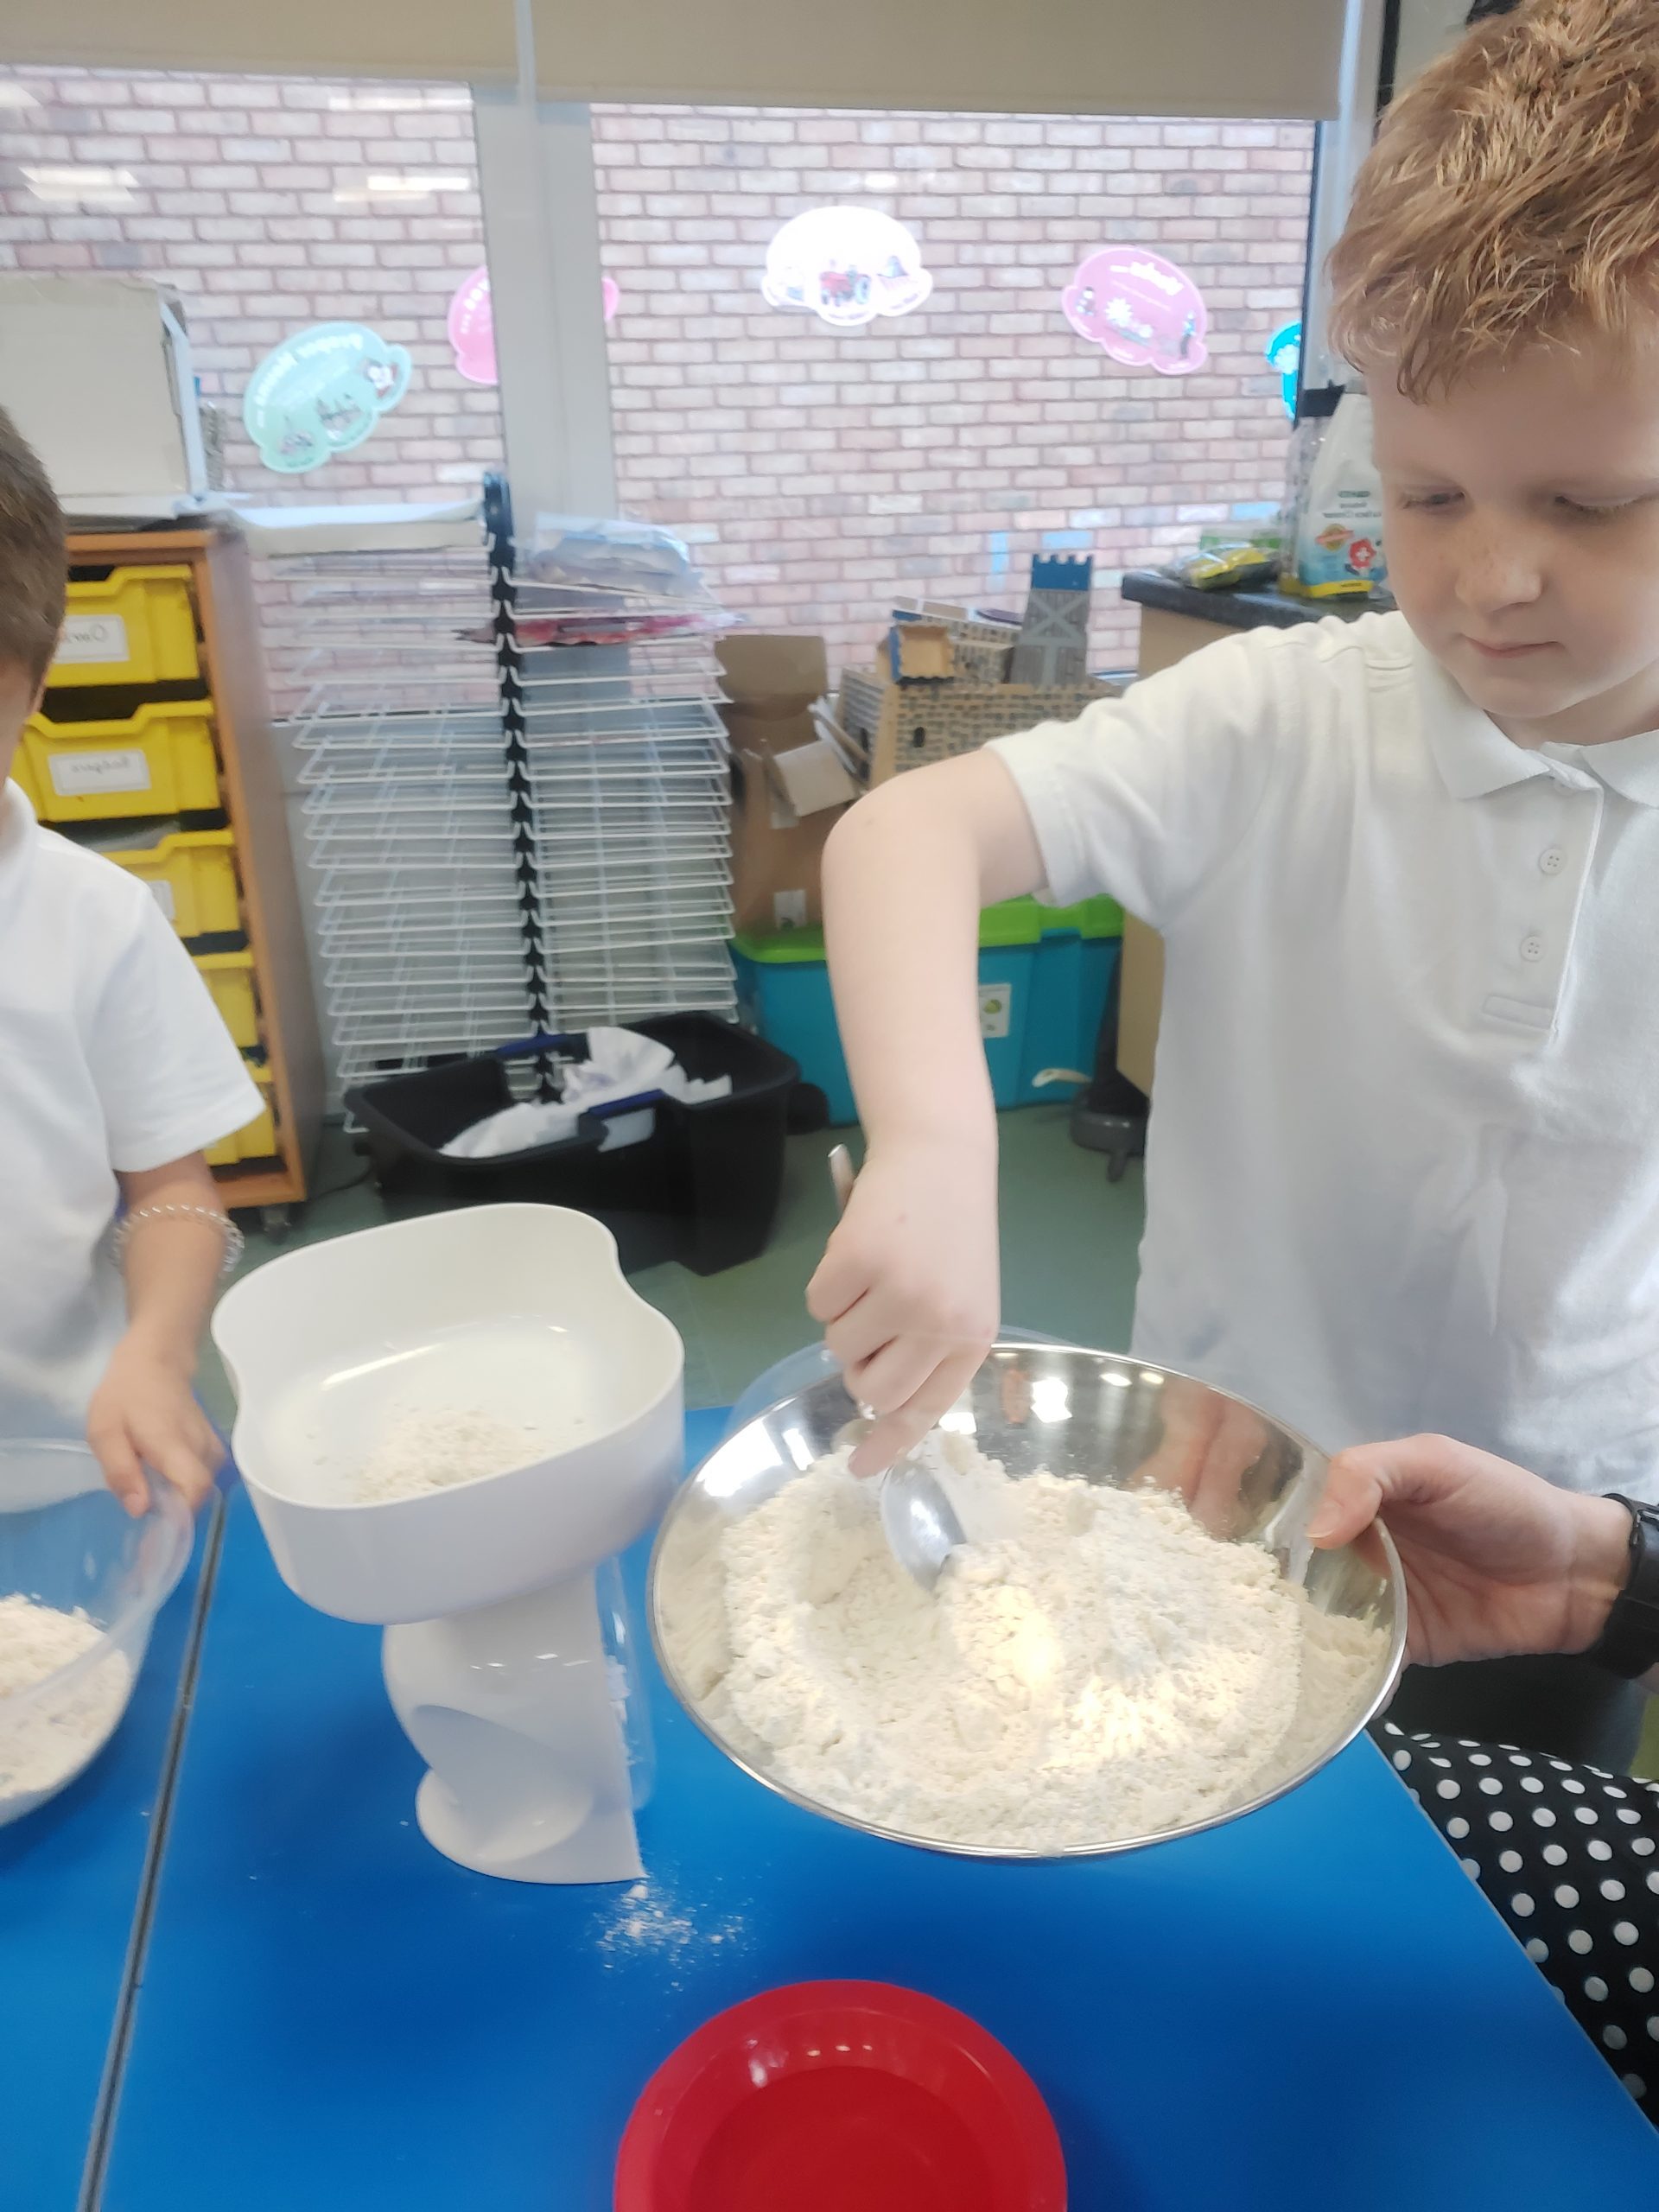 Year 1 children making their own bread